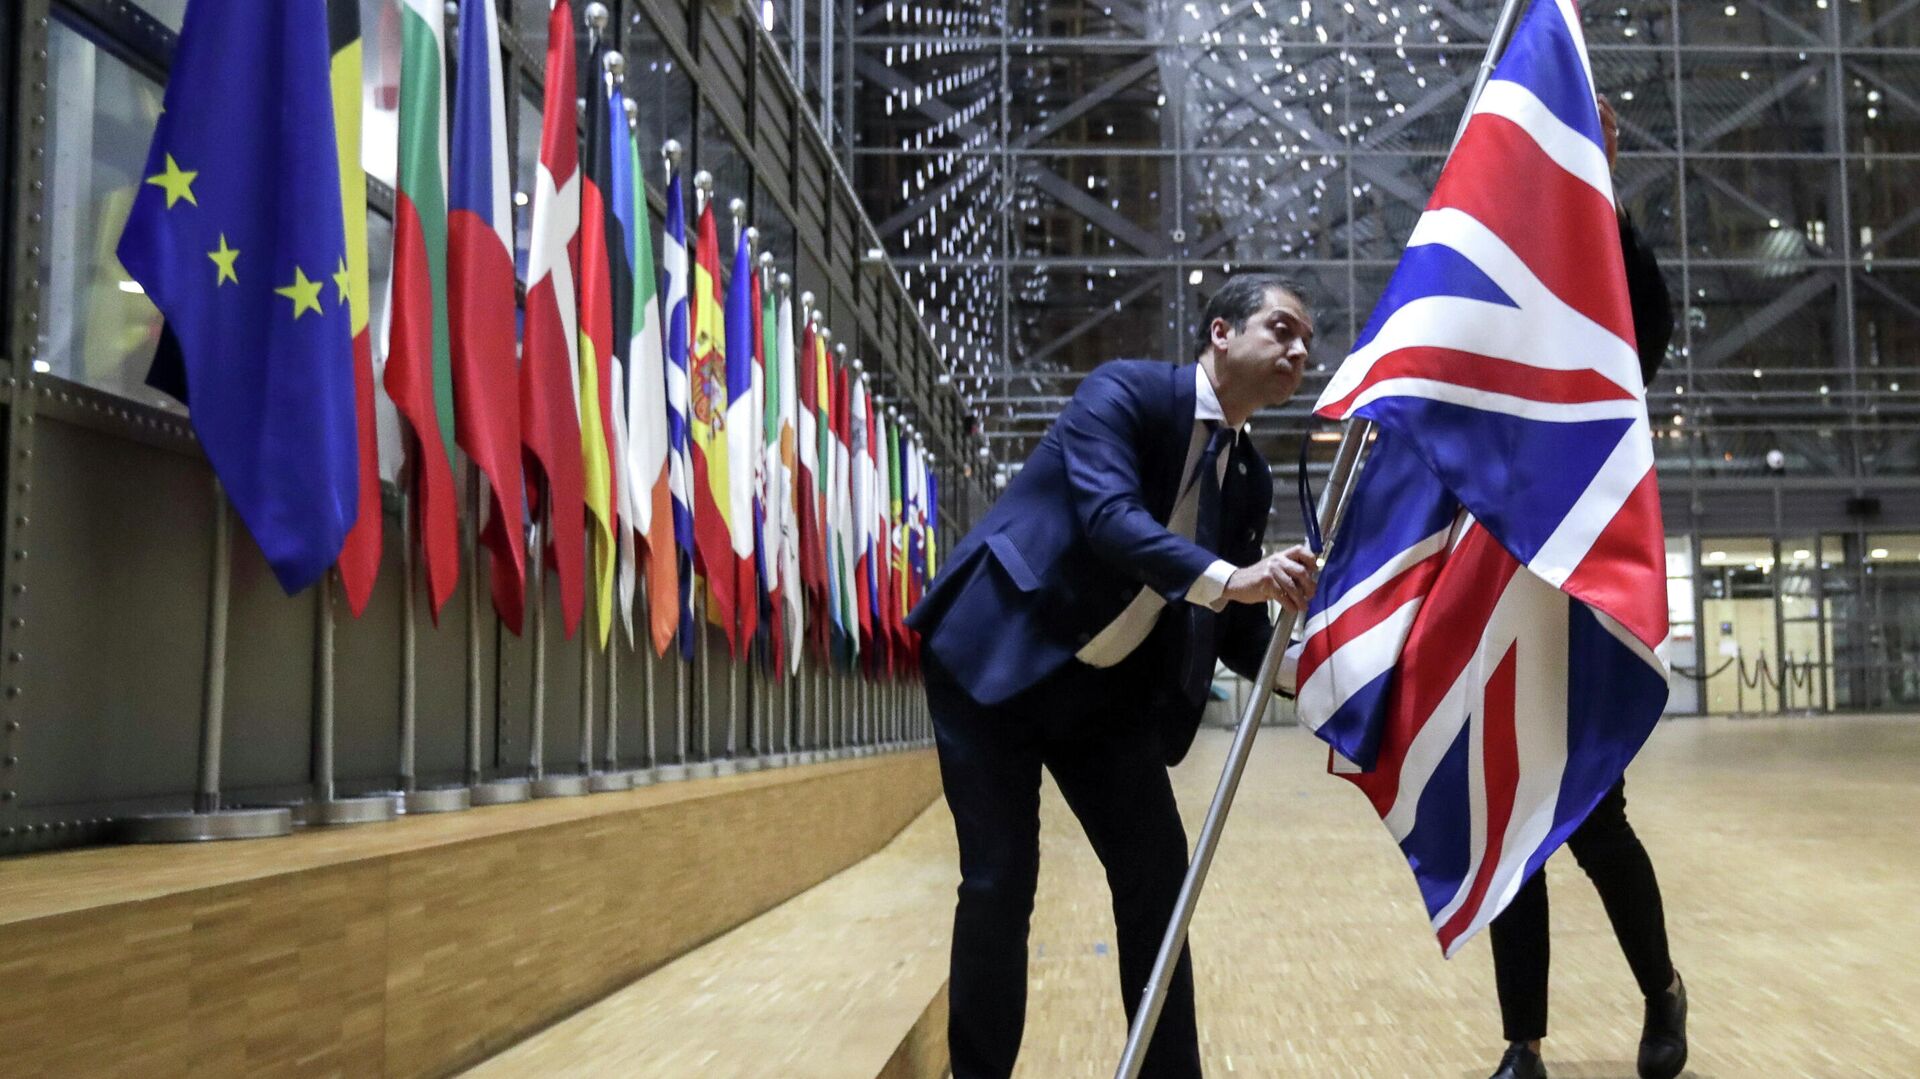 Сотрудники протокола убирают флаг Великобритании у здания Европы в Брюсселе - РИА Новости, 1920, 24.12.2020